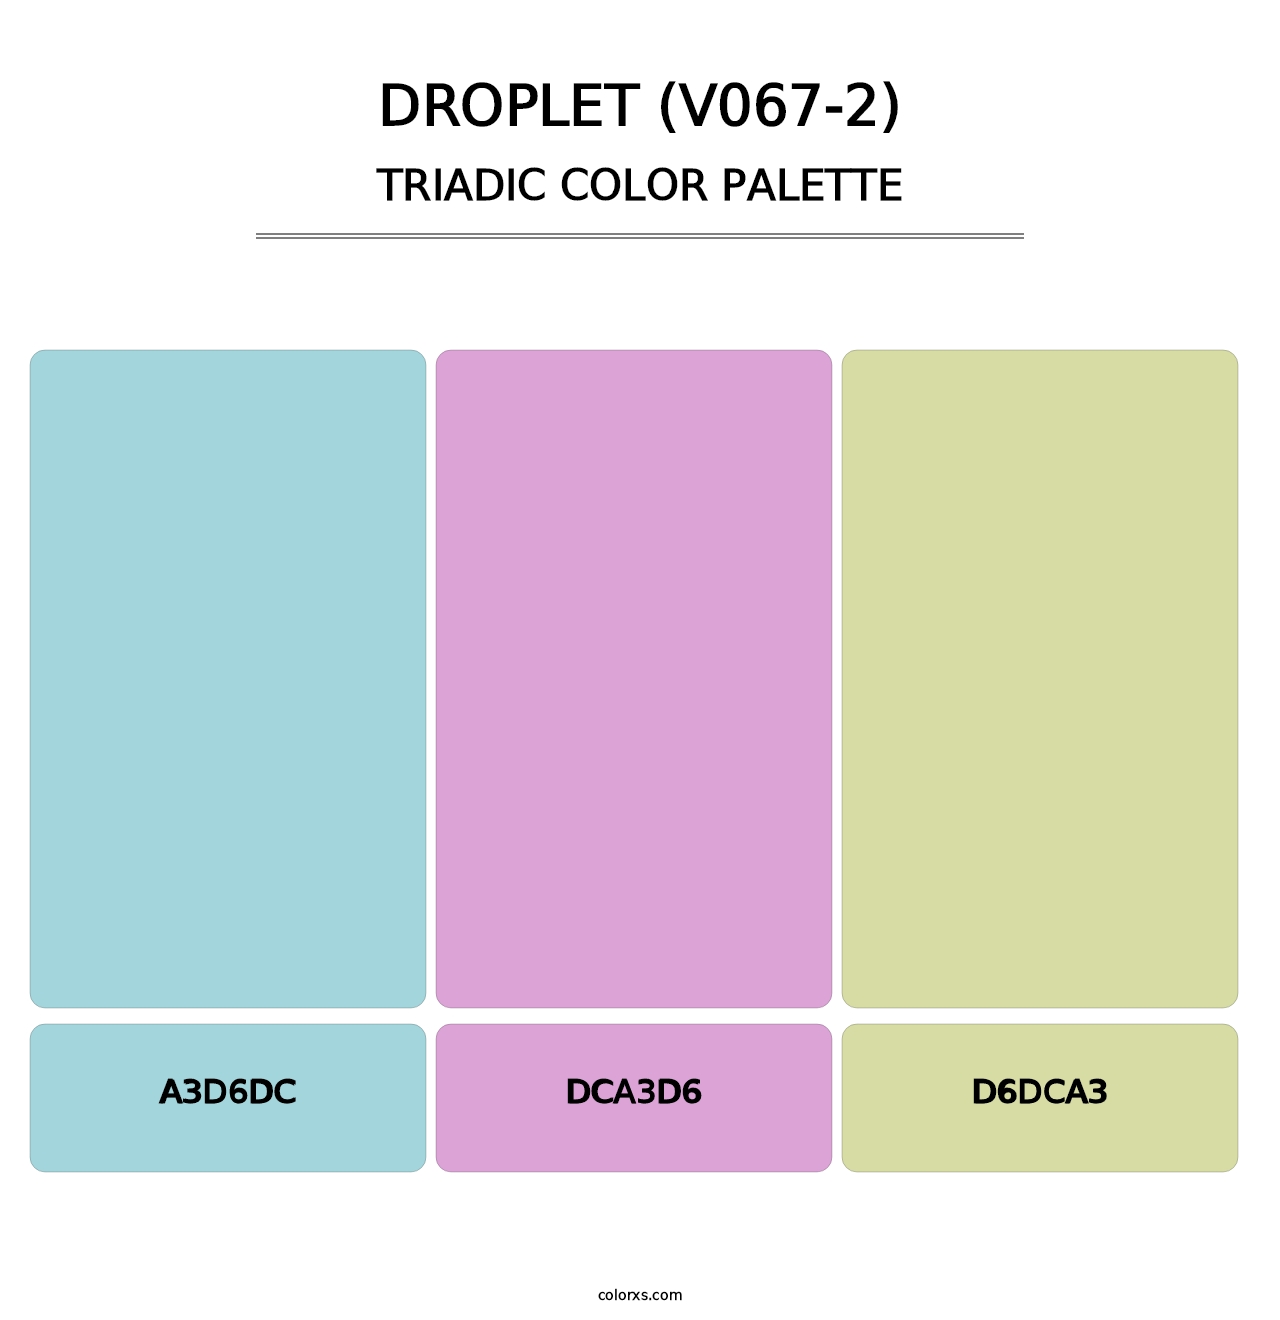 Droplet (V067-2) - Triadic Color Palette